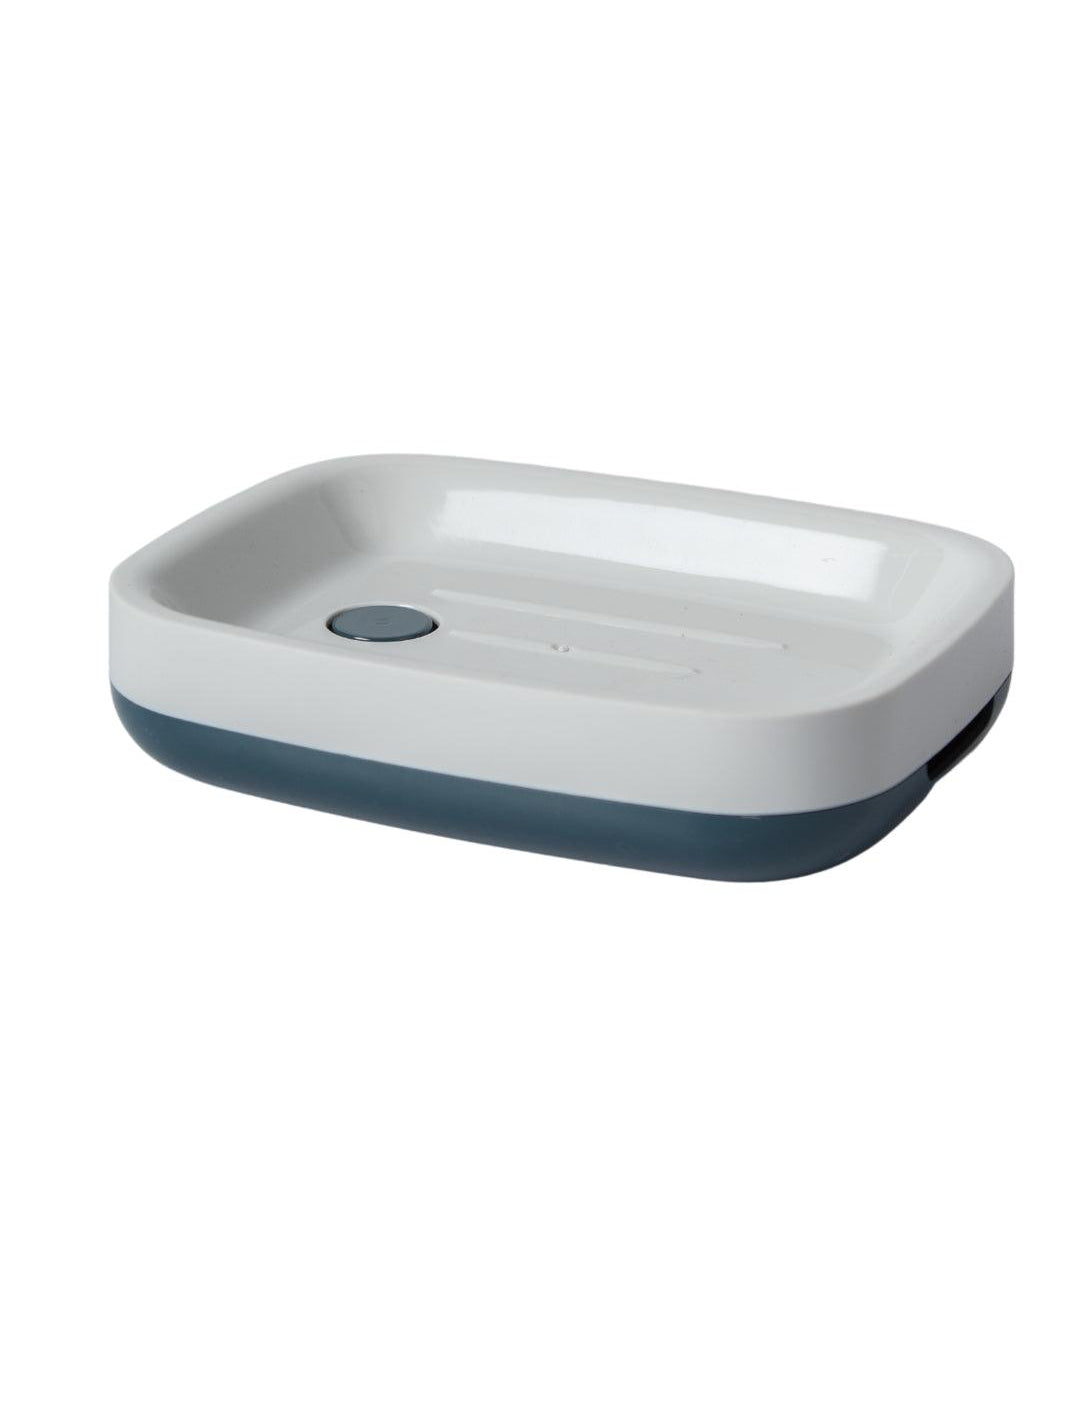 Modern Self Draining Soap Dish Holder - White